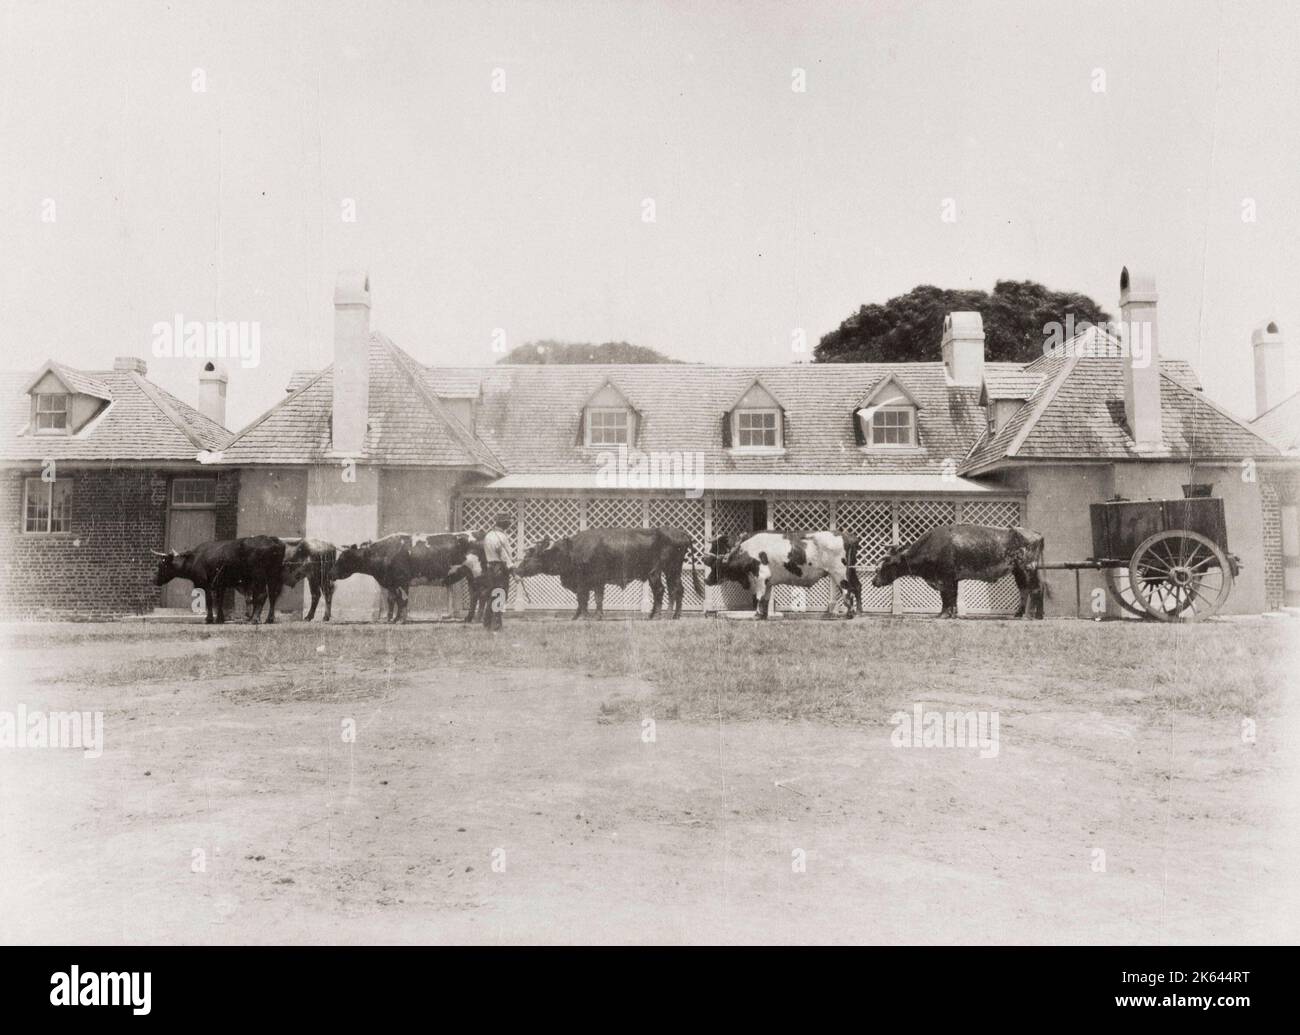 Photographie vintage du XIXe siècle: Scène de ferme - bétail et chariot Coolangatta. Coolangatta est une région historique d'Australie, sur la rive nord de la rivière Shoalhaven, sur la côte sud de la Nouvelle-Galles du Sud. Banque D'Images